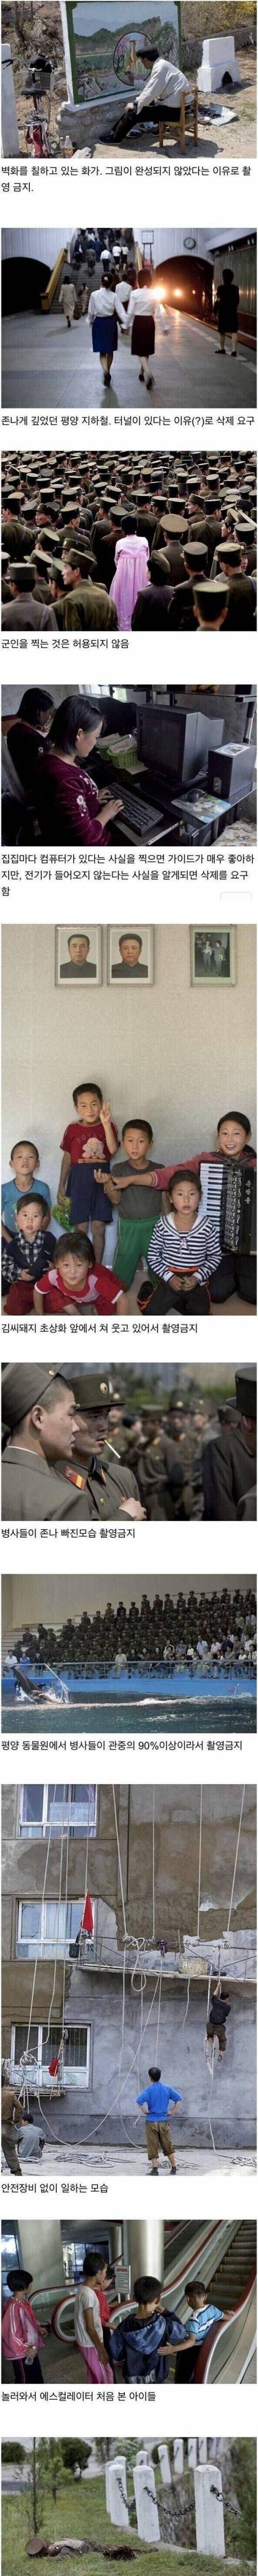 [스압] 사진작가가 몰래 찍었던 북한 사진